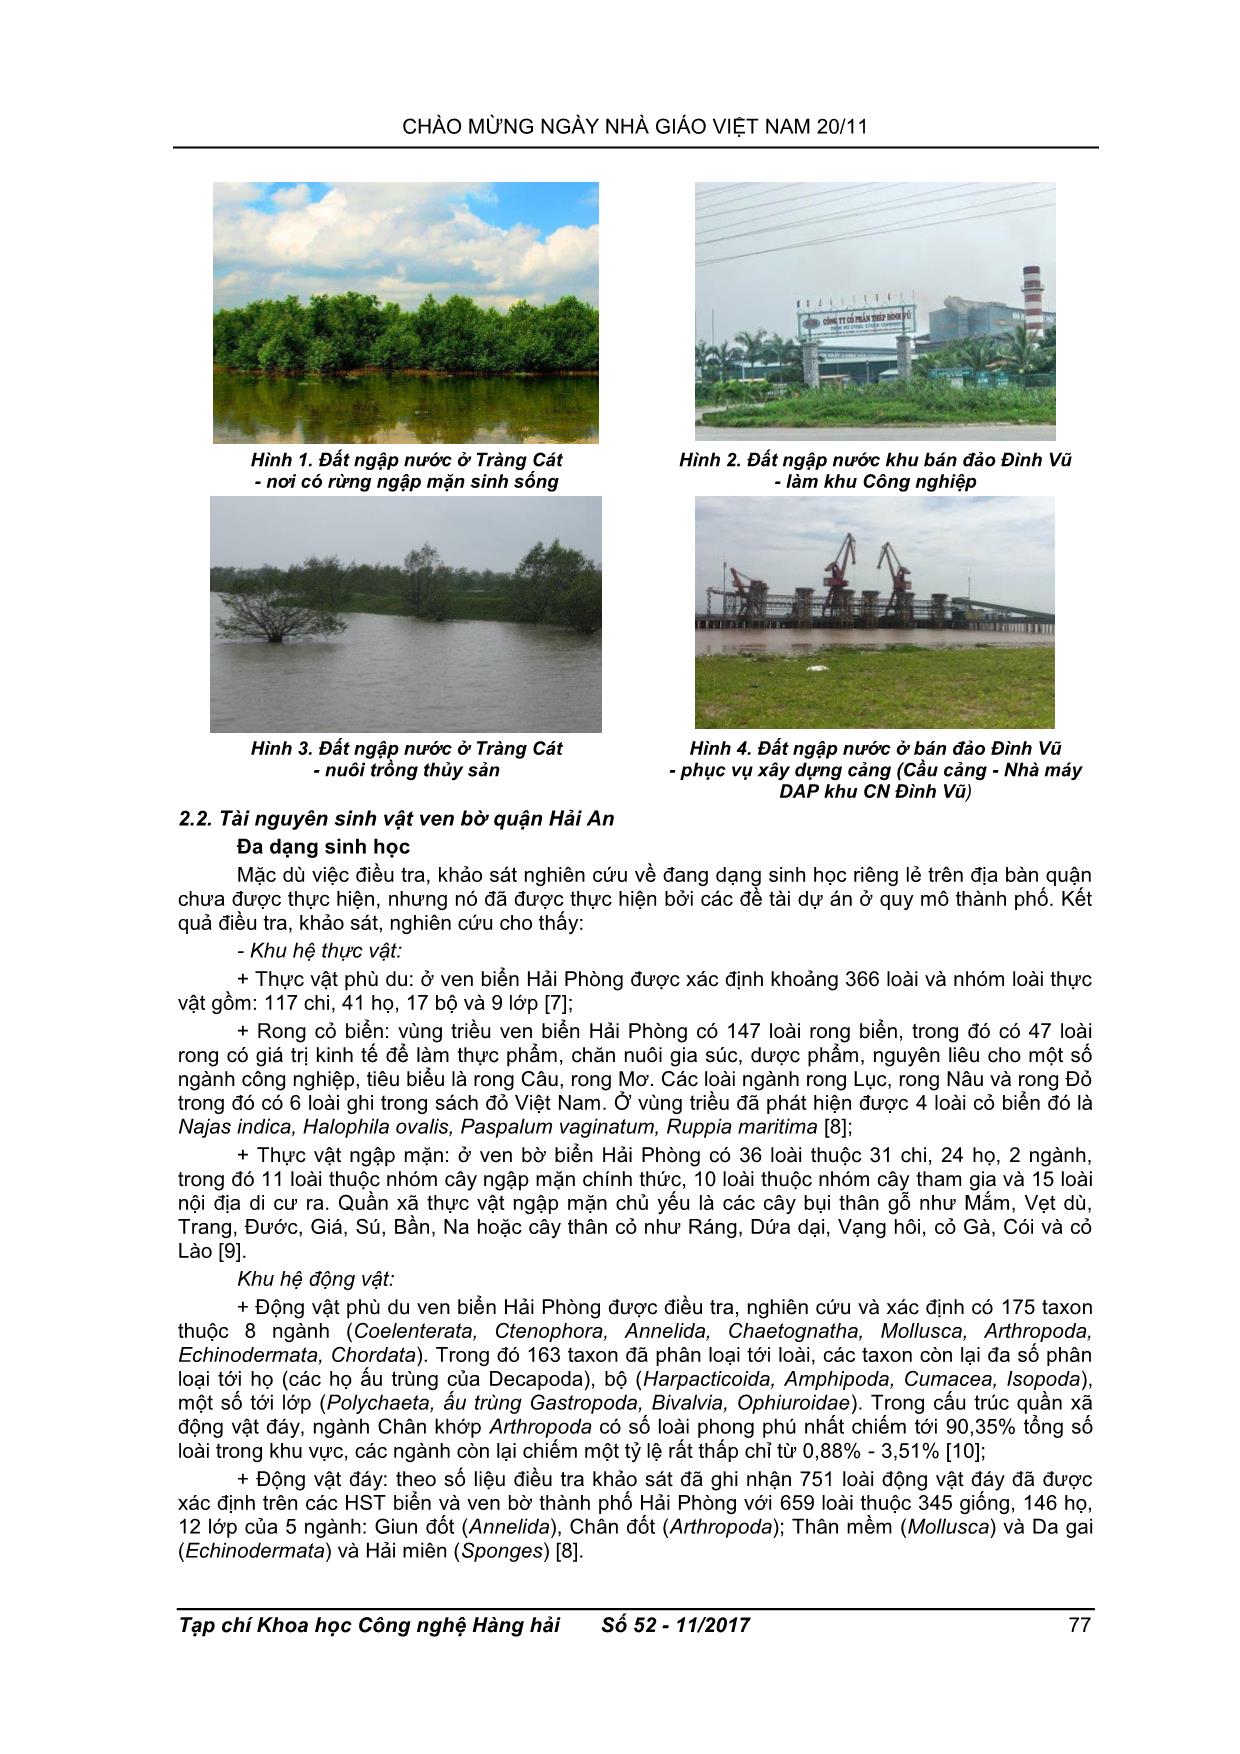 Hiện trạng tài nguyên thiên nhiên quận Hải An, thành phố Hải Phòng trang 3